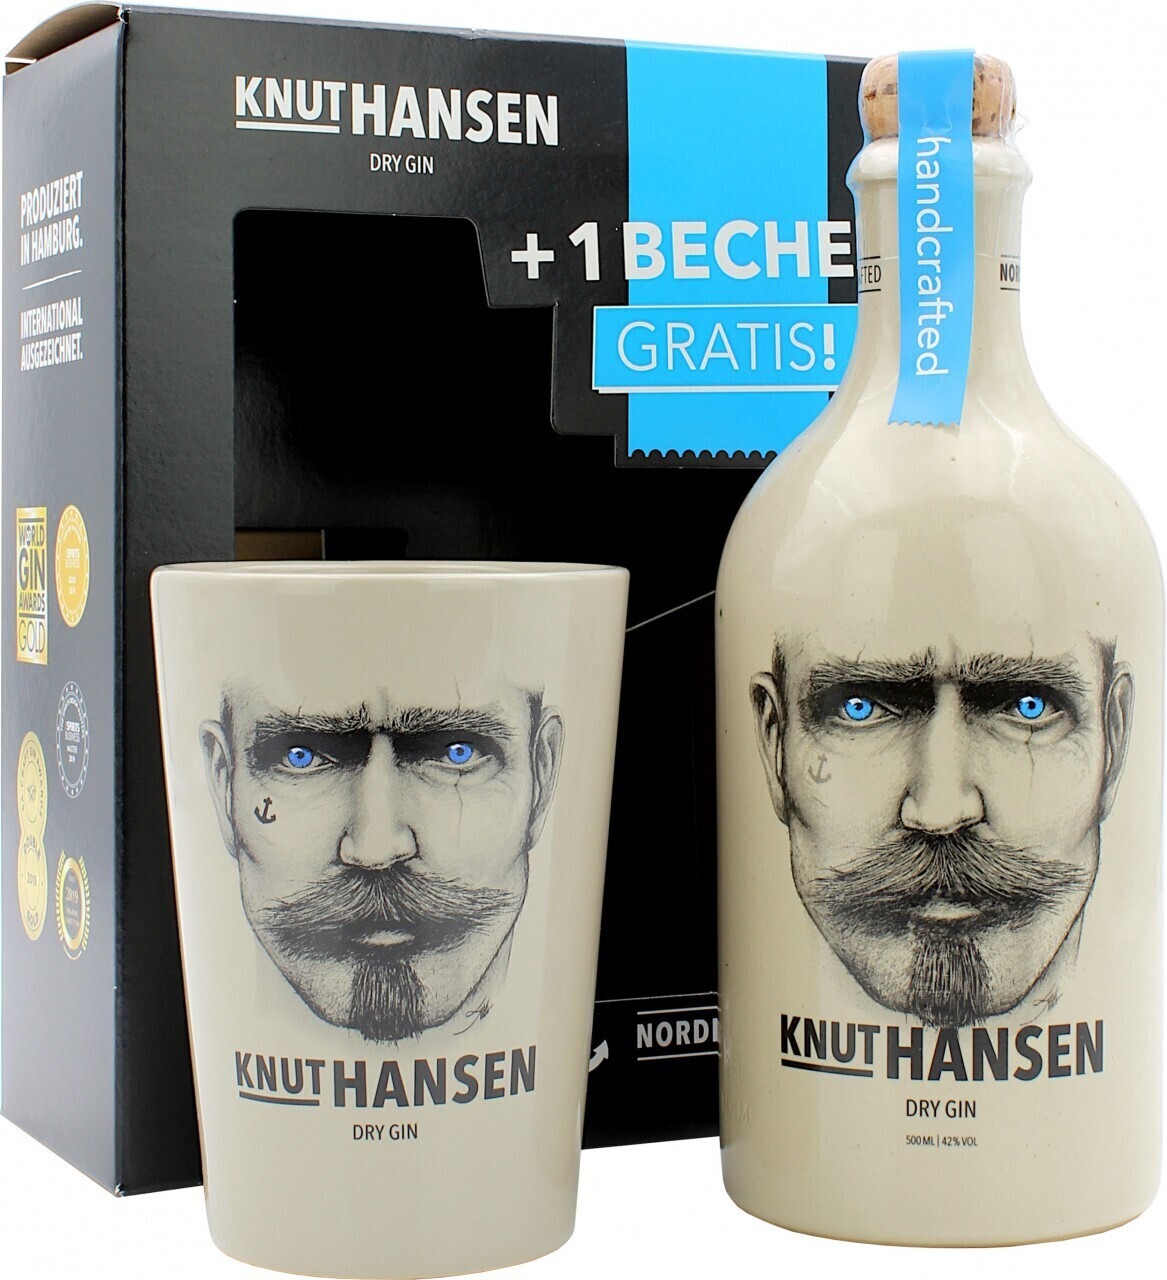 Knut Hansen Dry € 42% bei Preisvergleich mit Becher Gin ab 31,90 | 0,5l